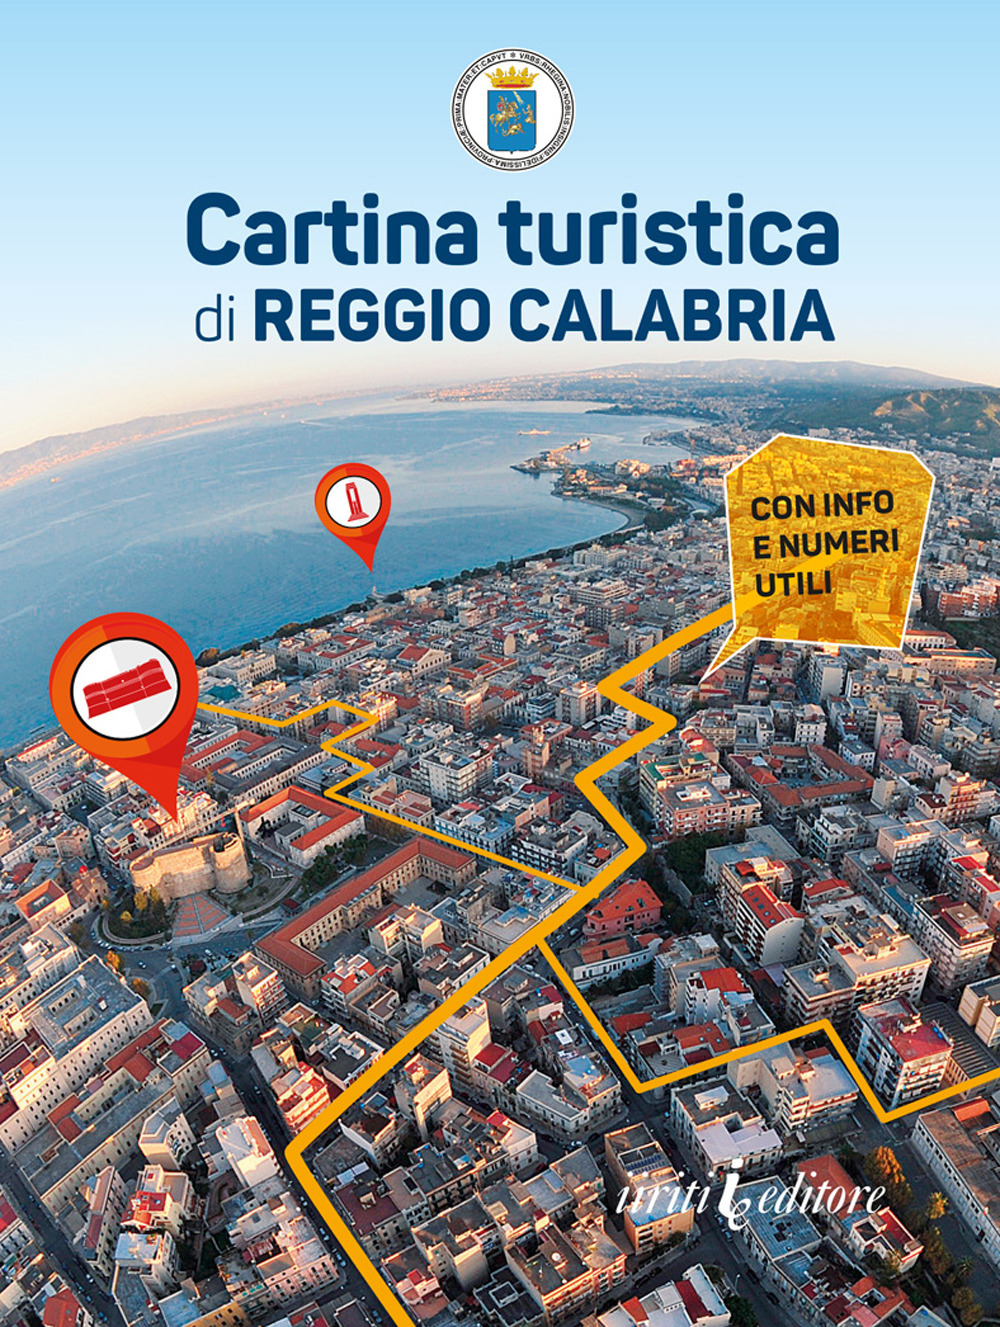 Cartina turistica di Reggio Calabria